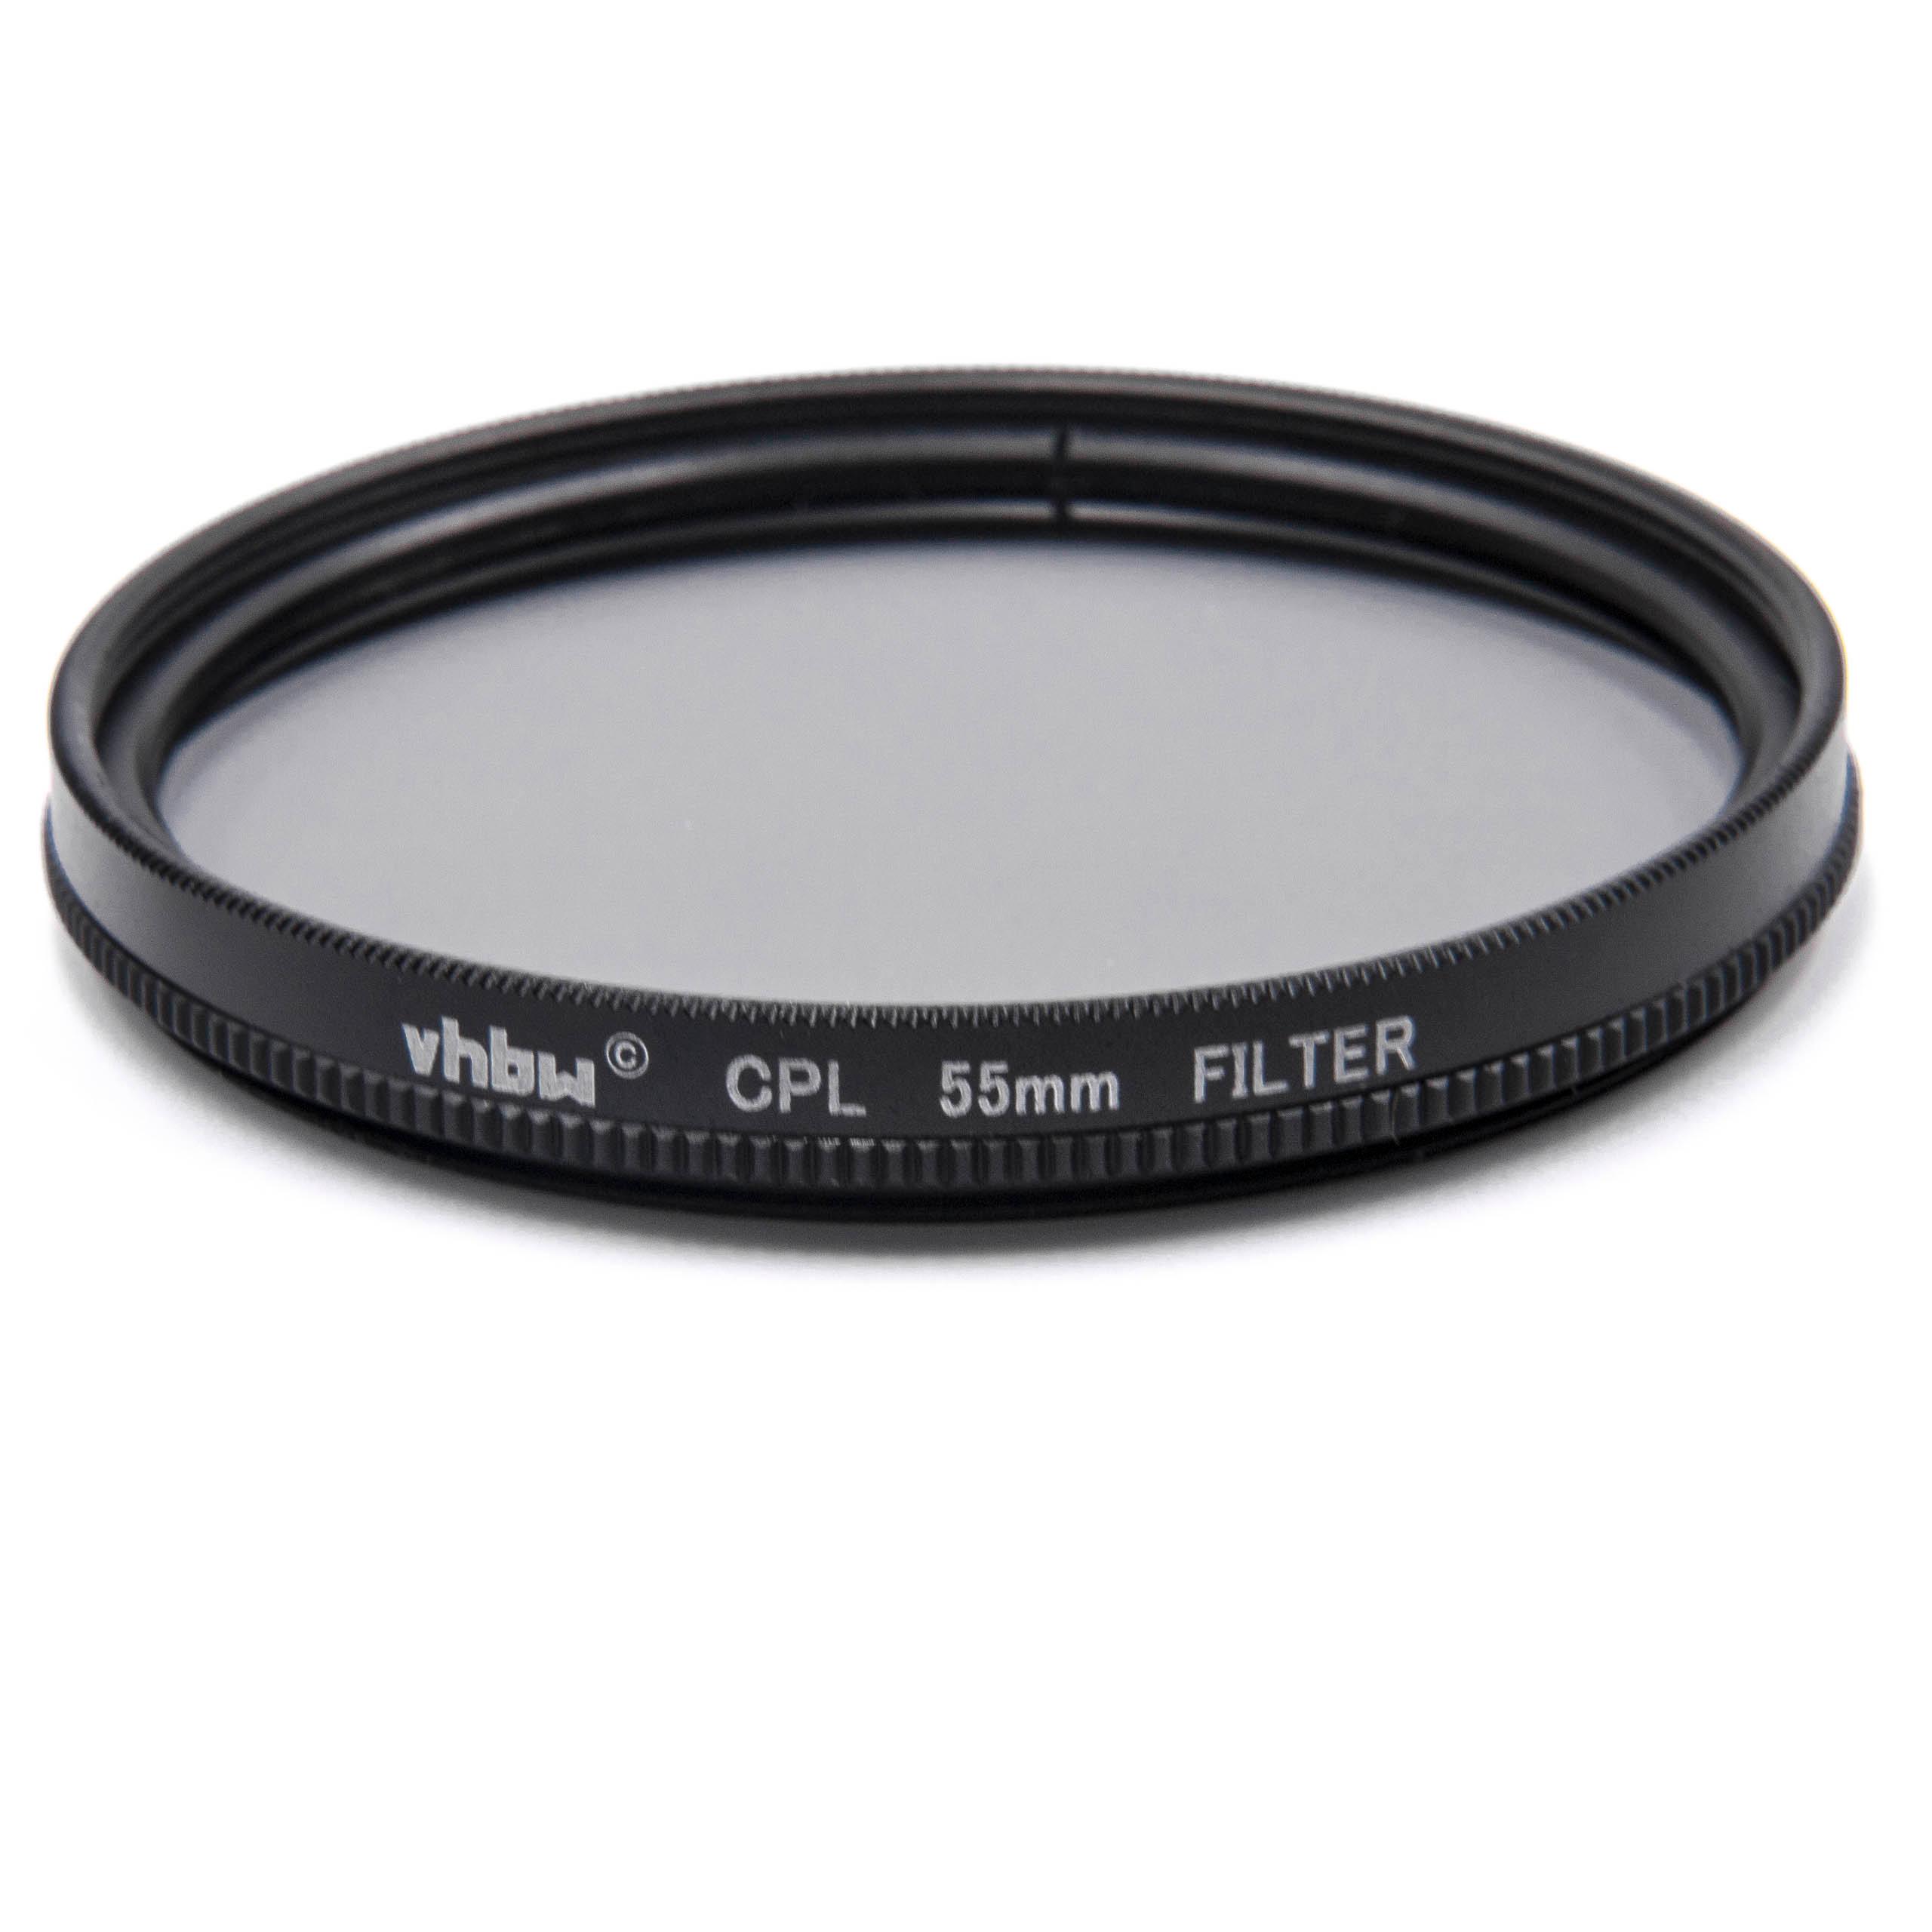 Filtro polarizzatore per camere e obiettivi con filettatura da 55 mm - filtro polarizzante circolare (CPL)